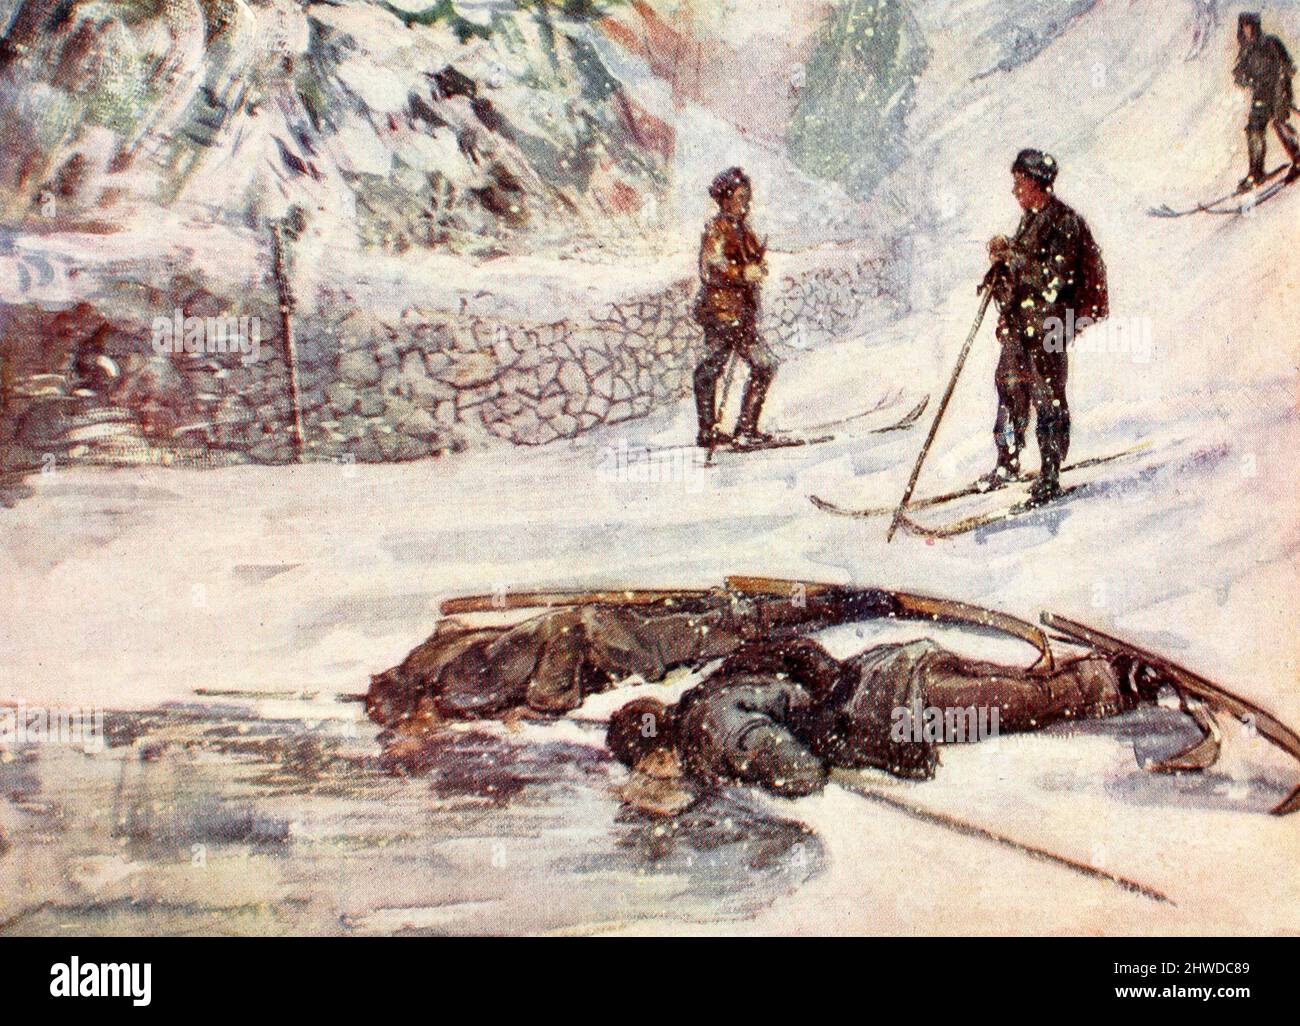 Skieurs buvant du Goosewine - Norvège, vers 1900 Banque D'Images